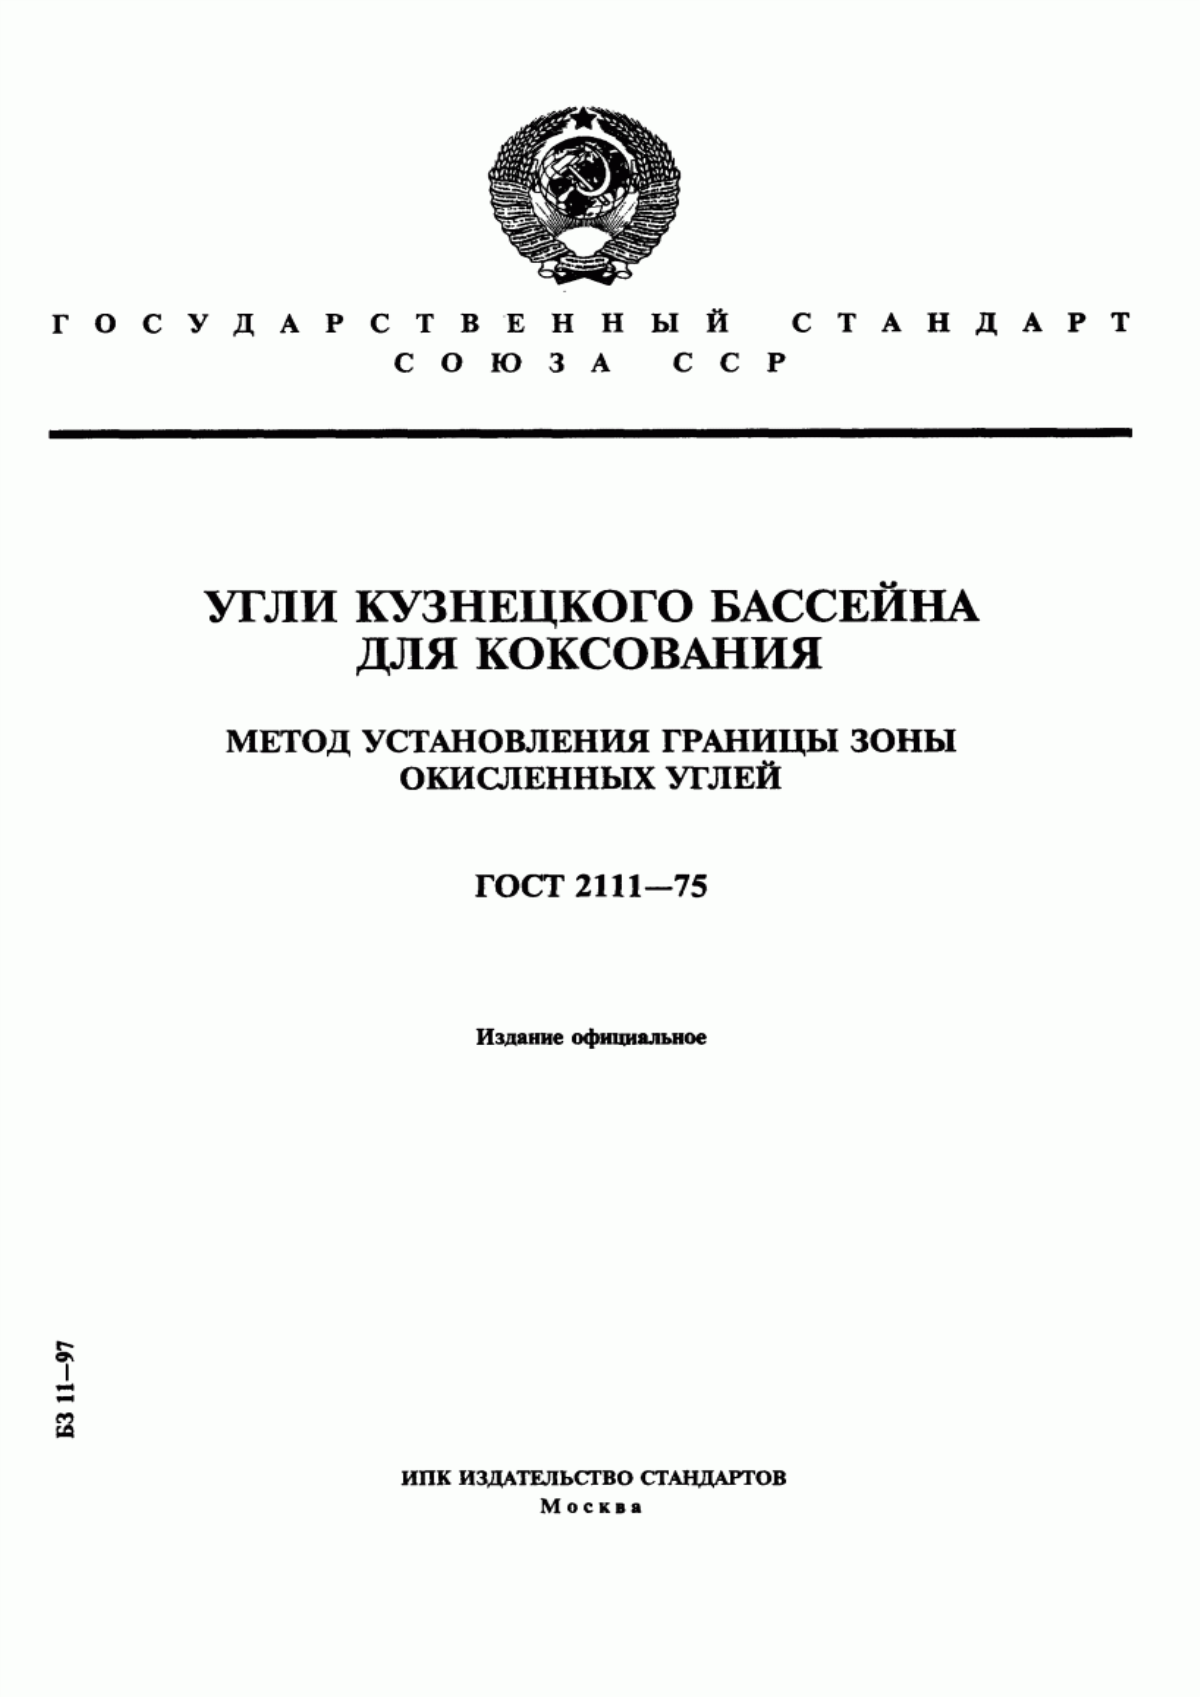 ГОСТ 2111-75 Угли Кузнецкого бассейна для коксования. Метод установления границы зоны окисленных углей